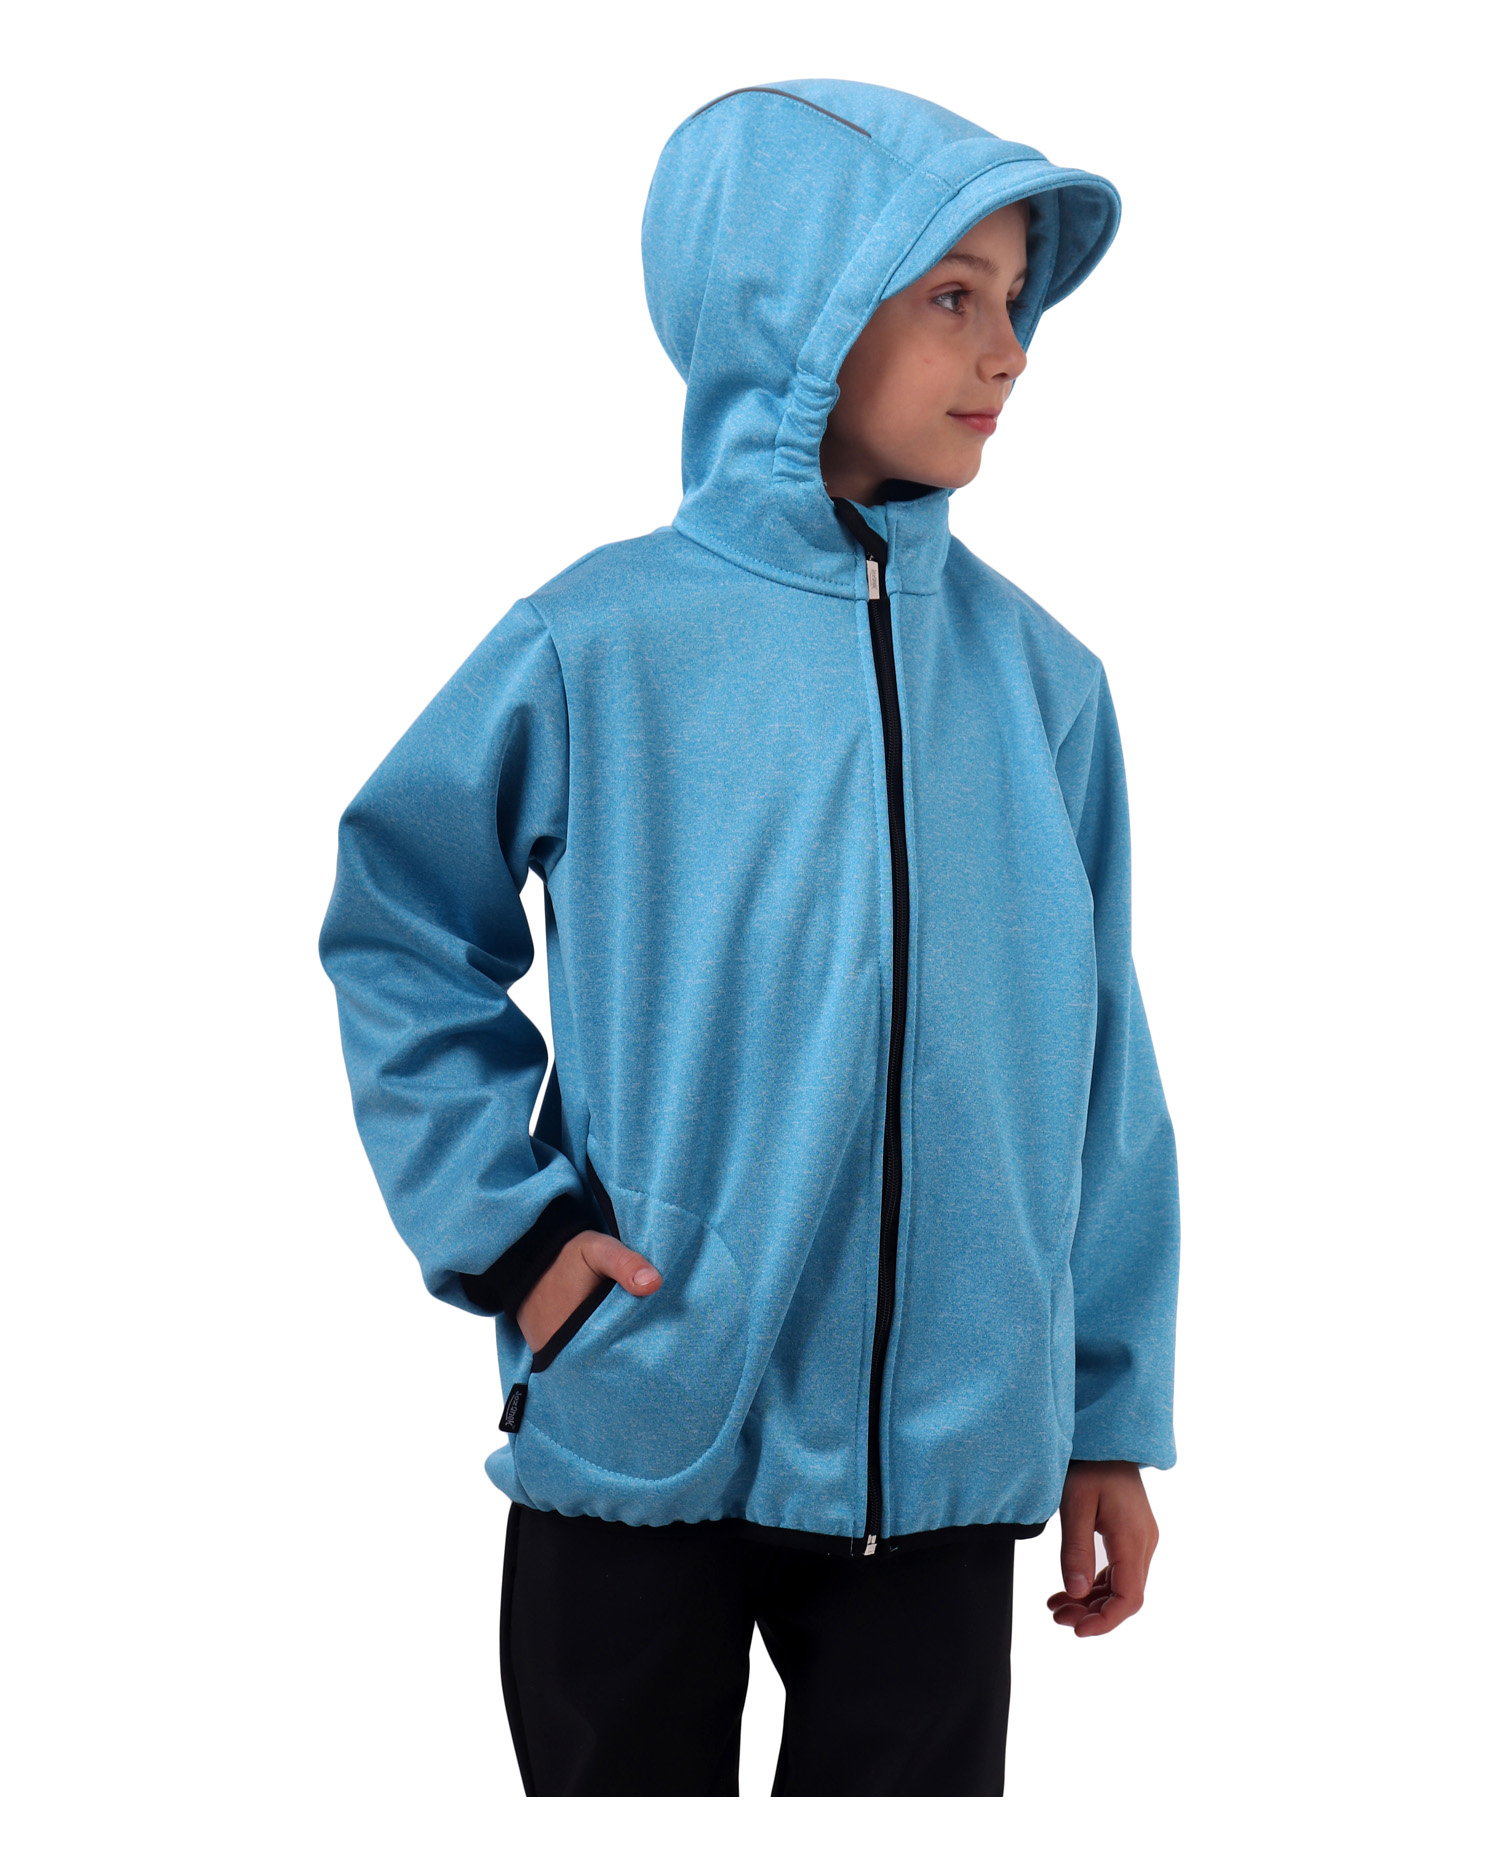 Detská softshellová bunda, svetlo modrý melír